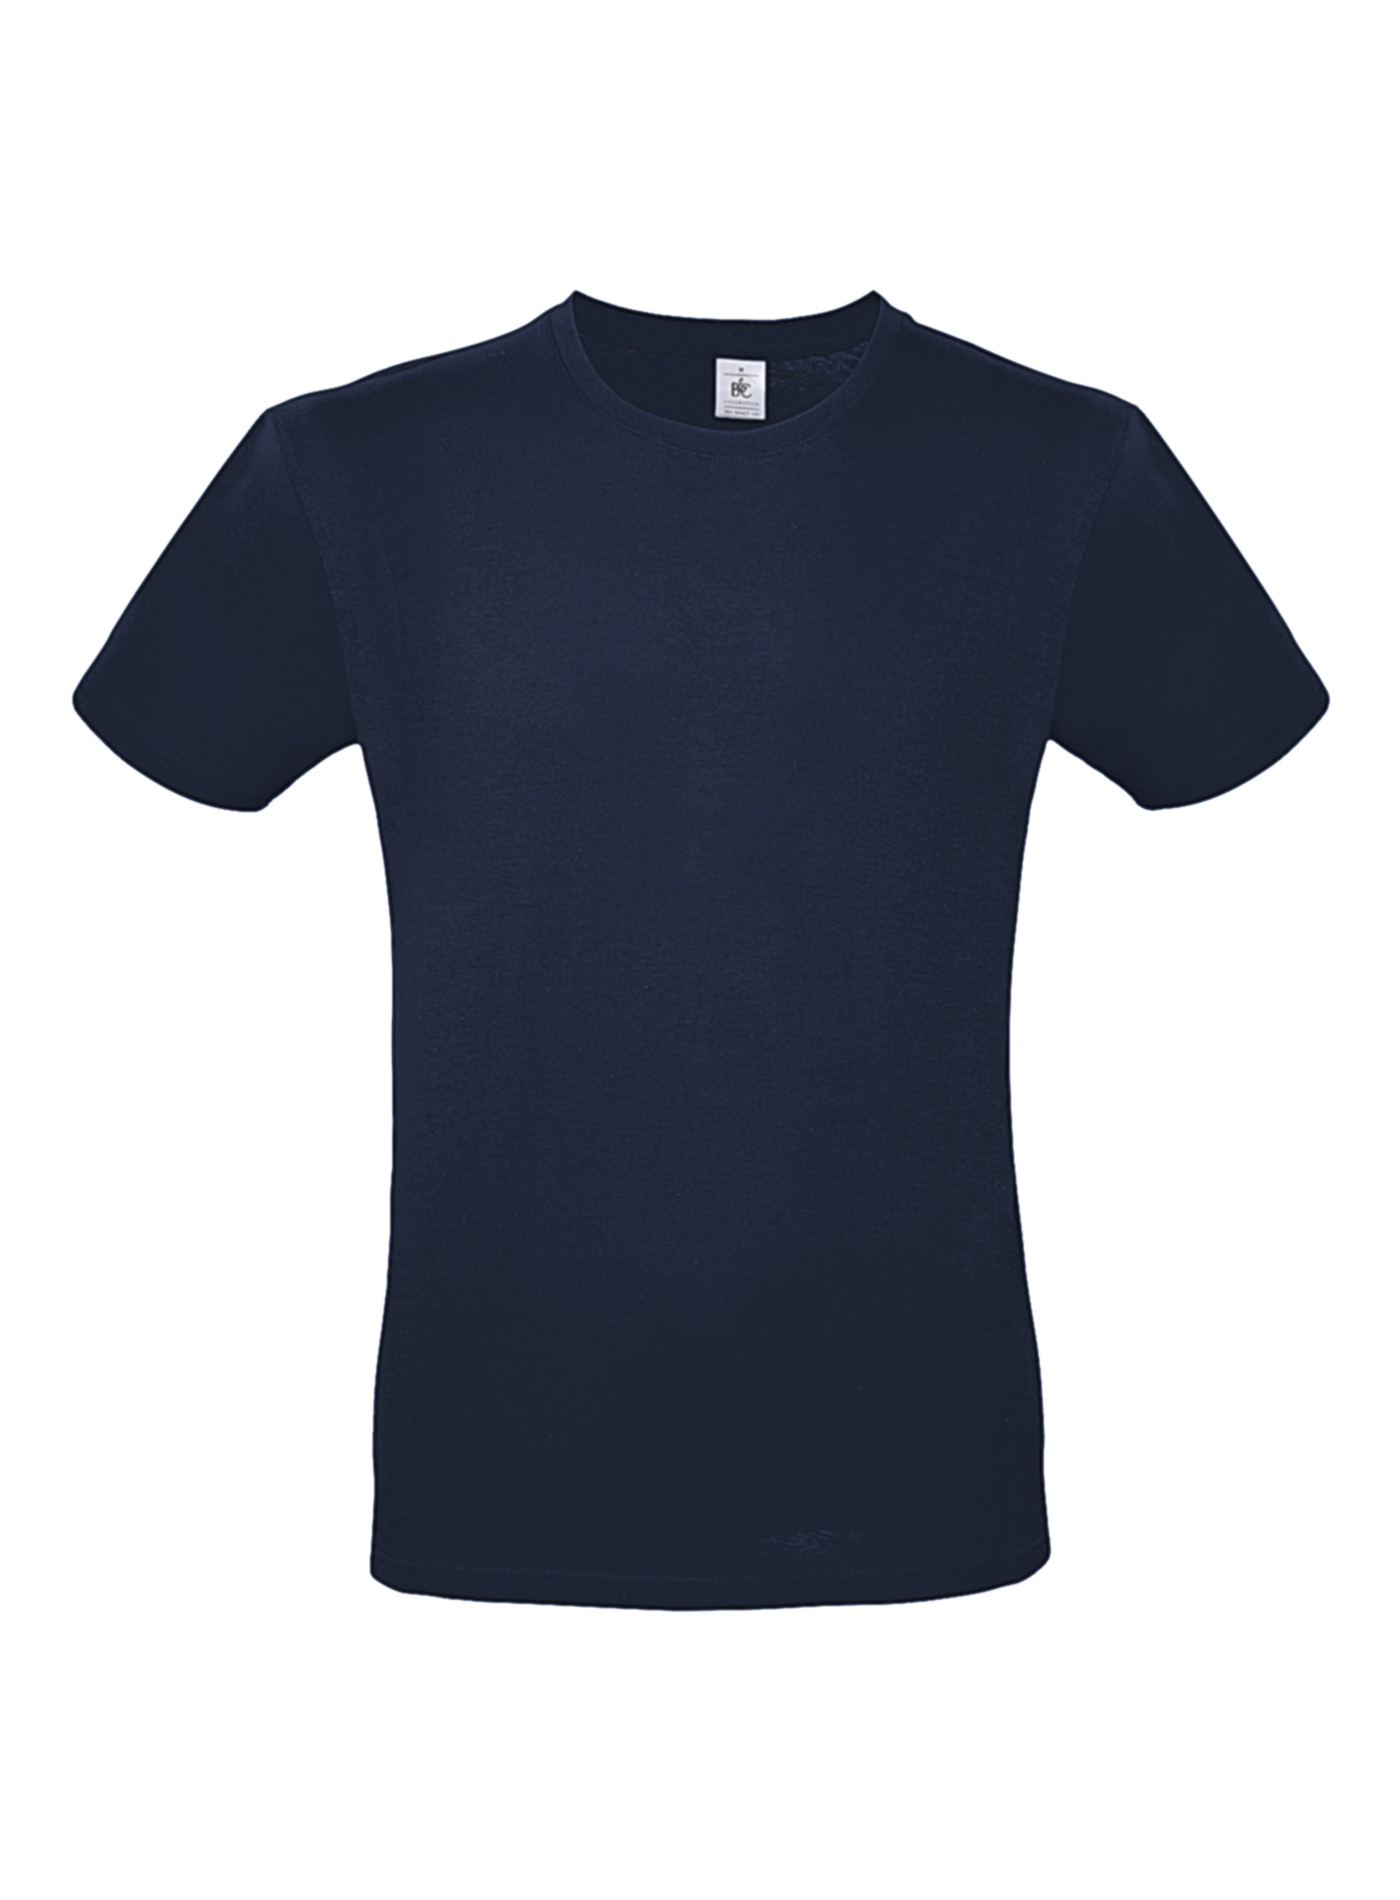 Pánské tričko B&C - Námořní modrá 5XL